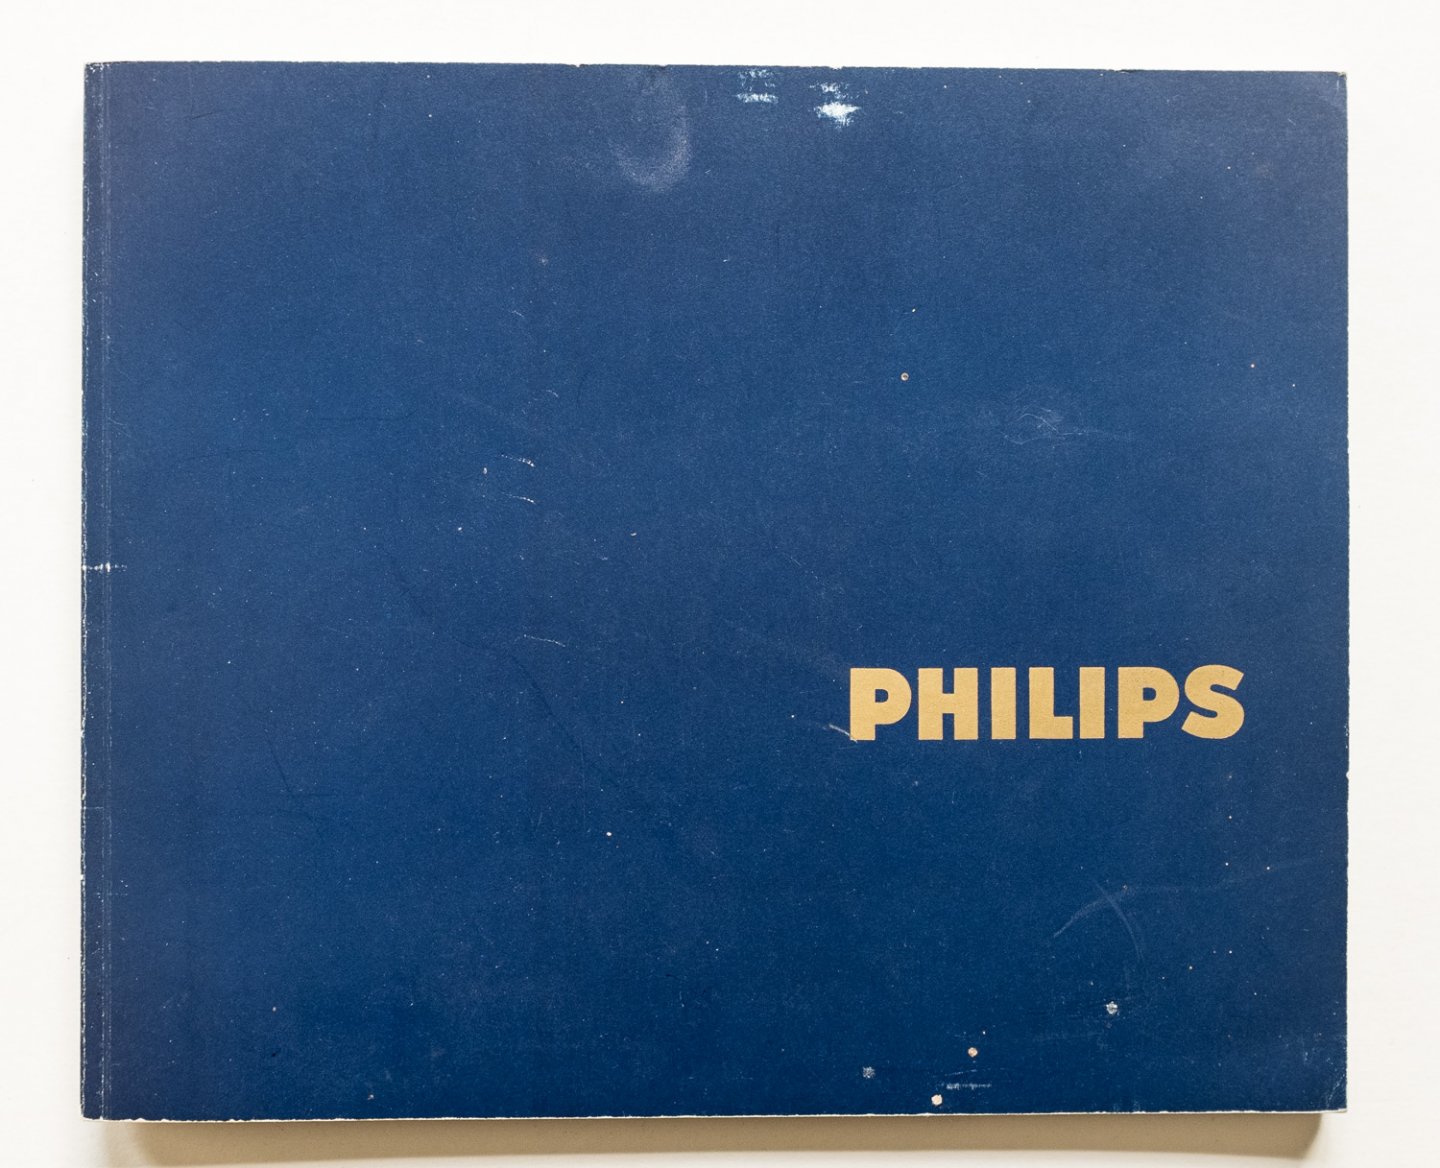  - Philips - bezoekersgids